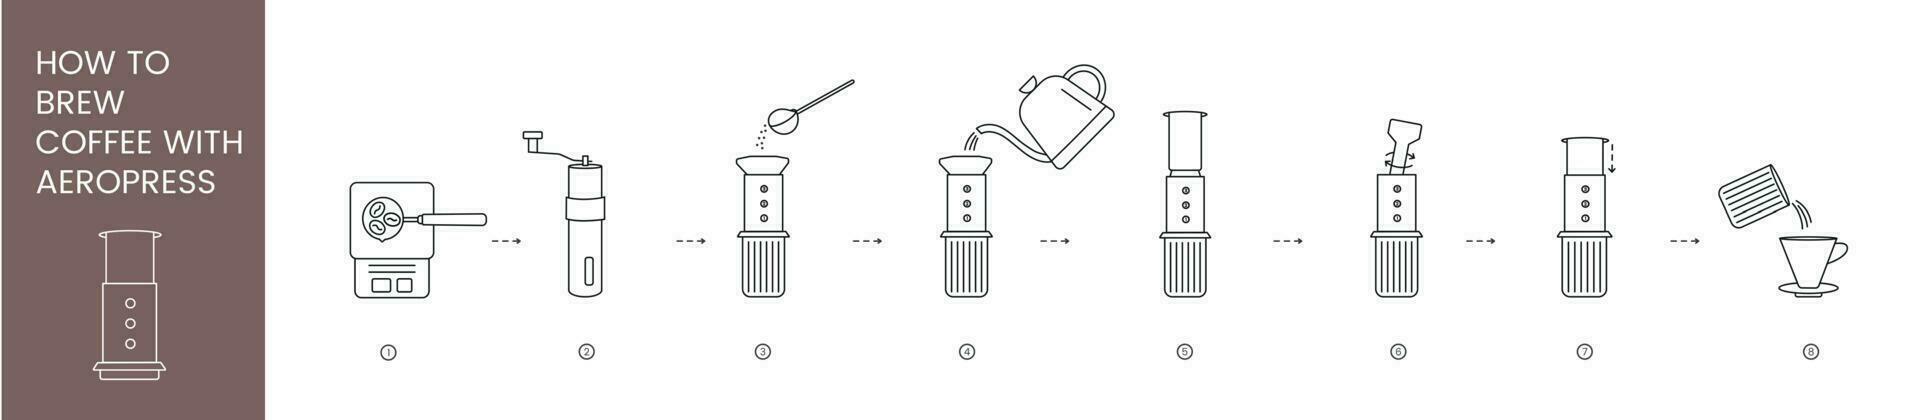 aeropress instructions pour brassage café, linéaire vecteur illustration